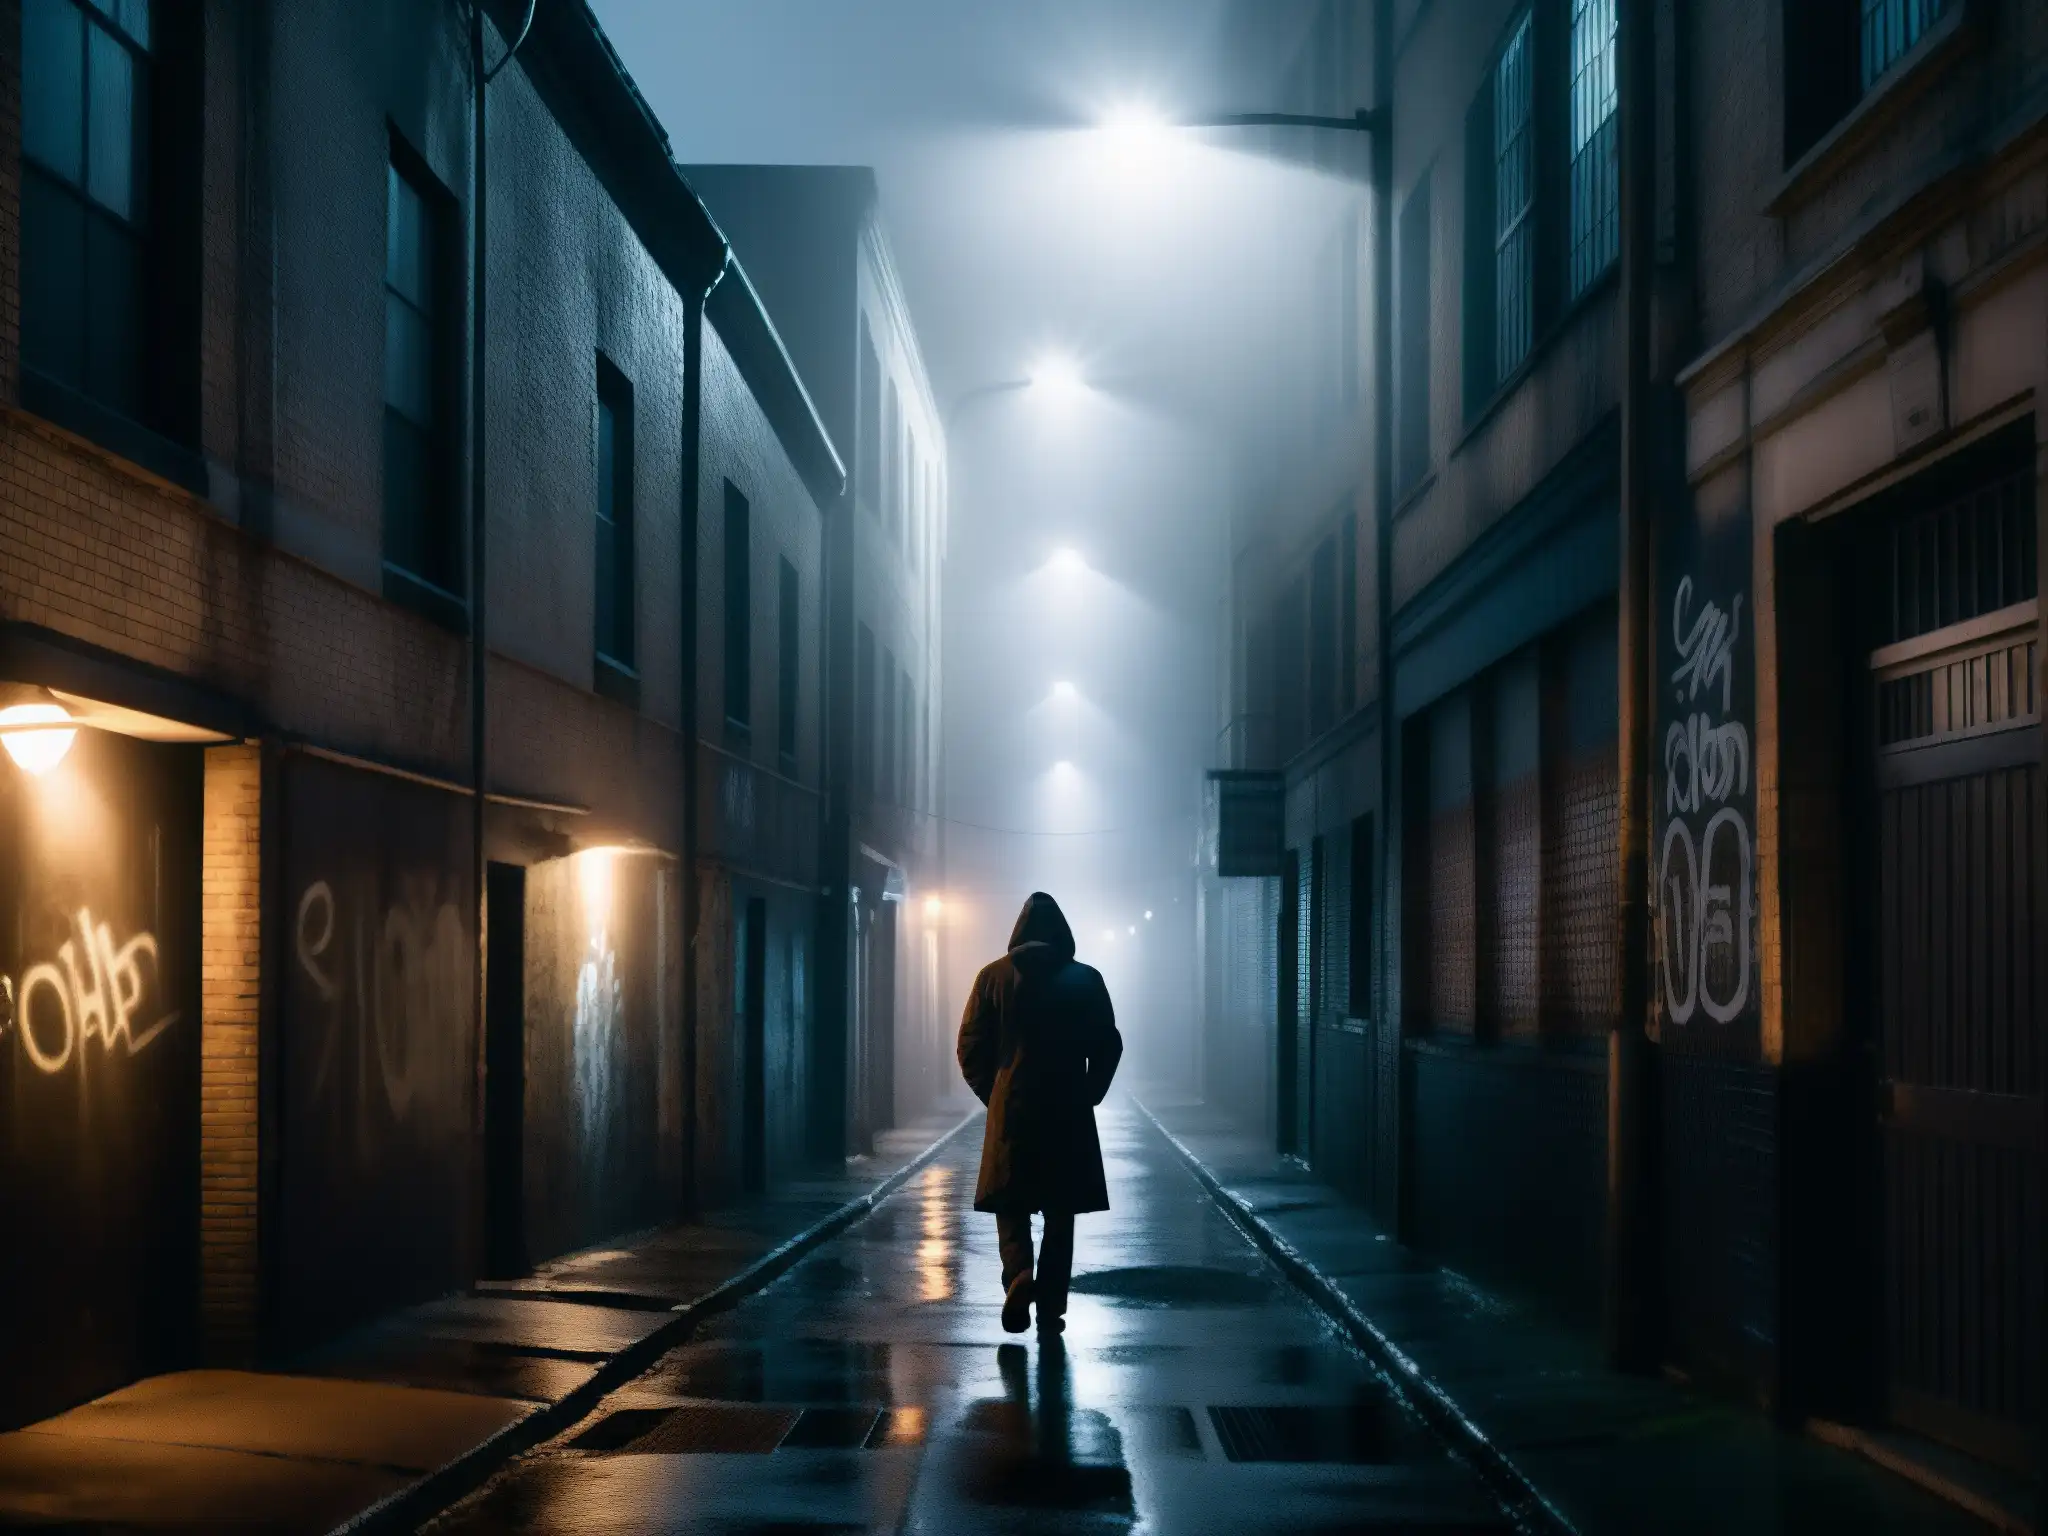 Alleyway sombría con figura en la niebla, evocando el impacto psicológico de leyendas urbanas